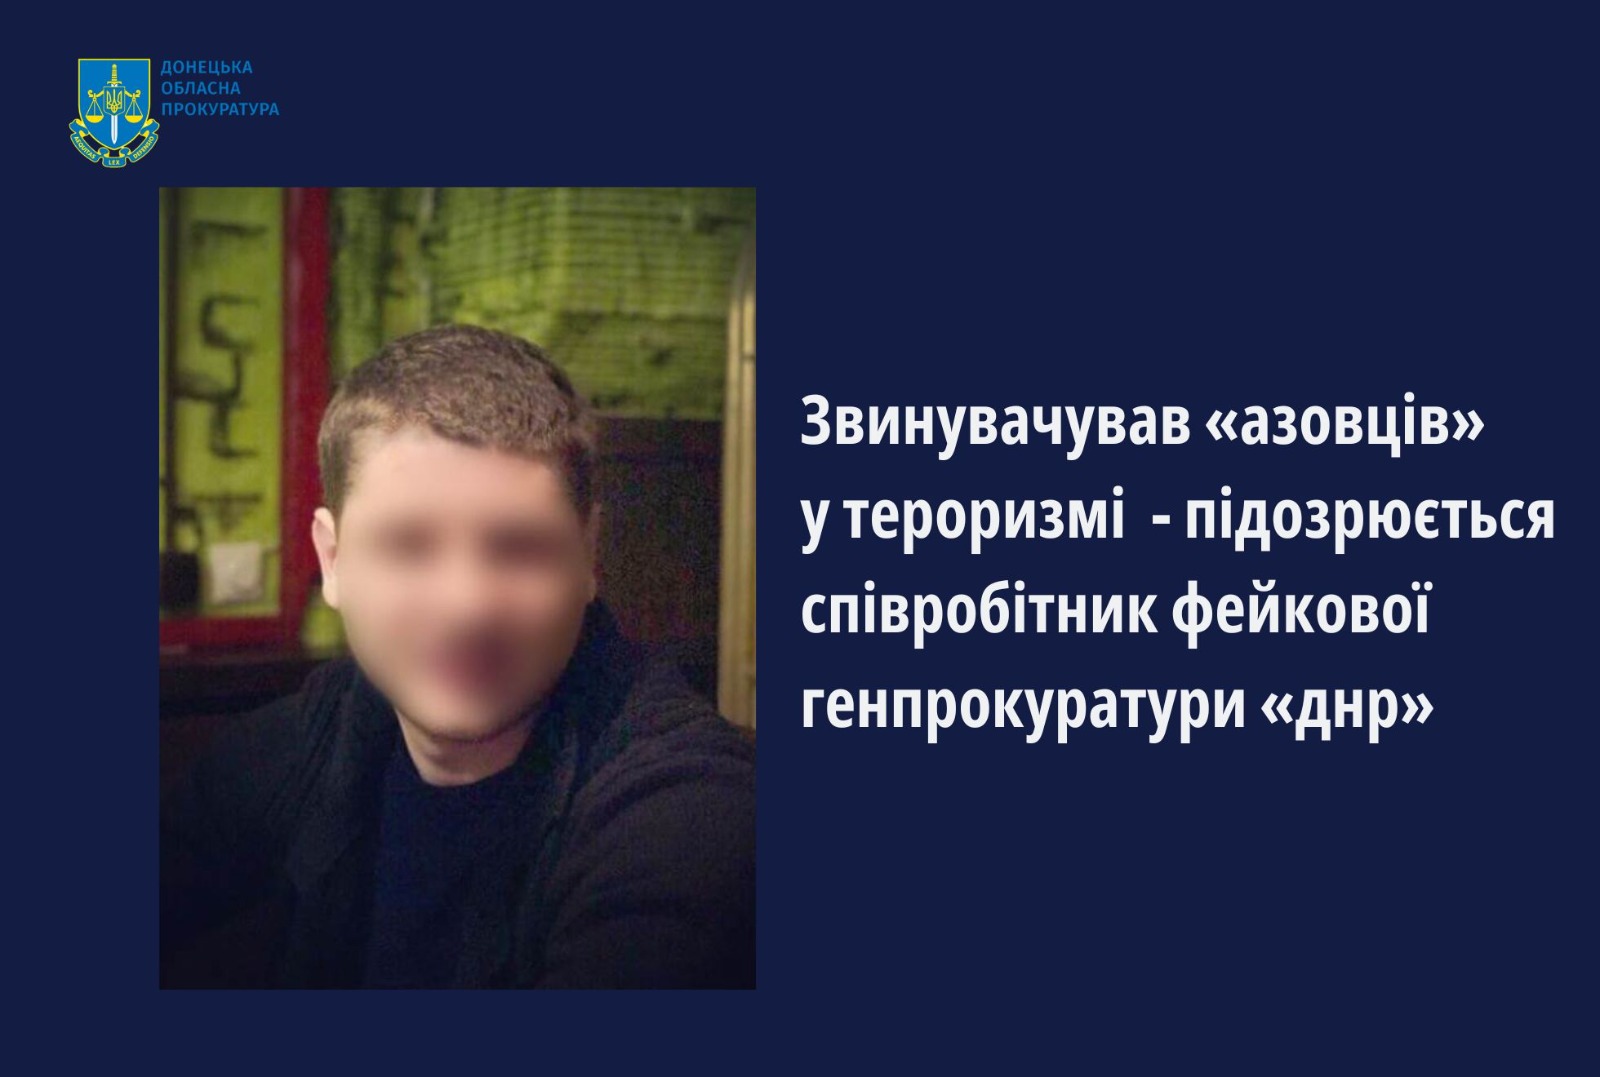 Звинувачував «азовців» у тероризмі - підозрюється співробітник фейкової генпрокуратури «днр»